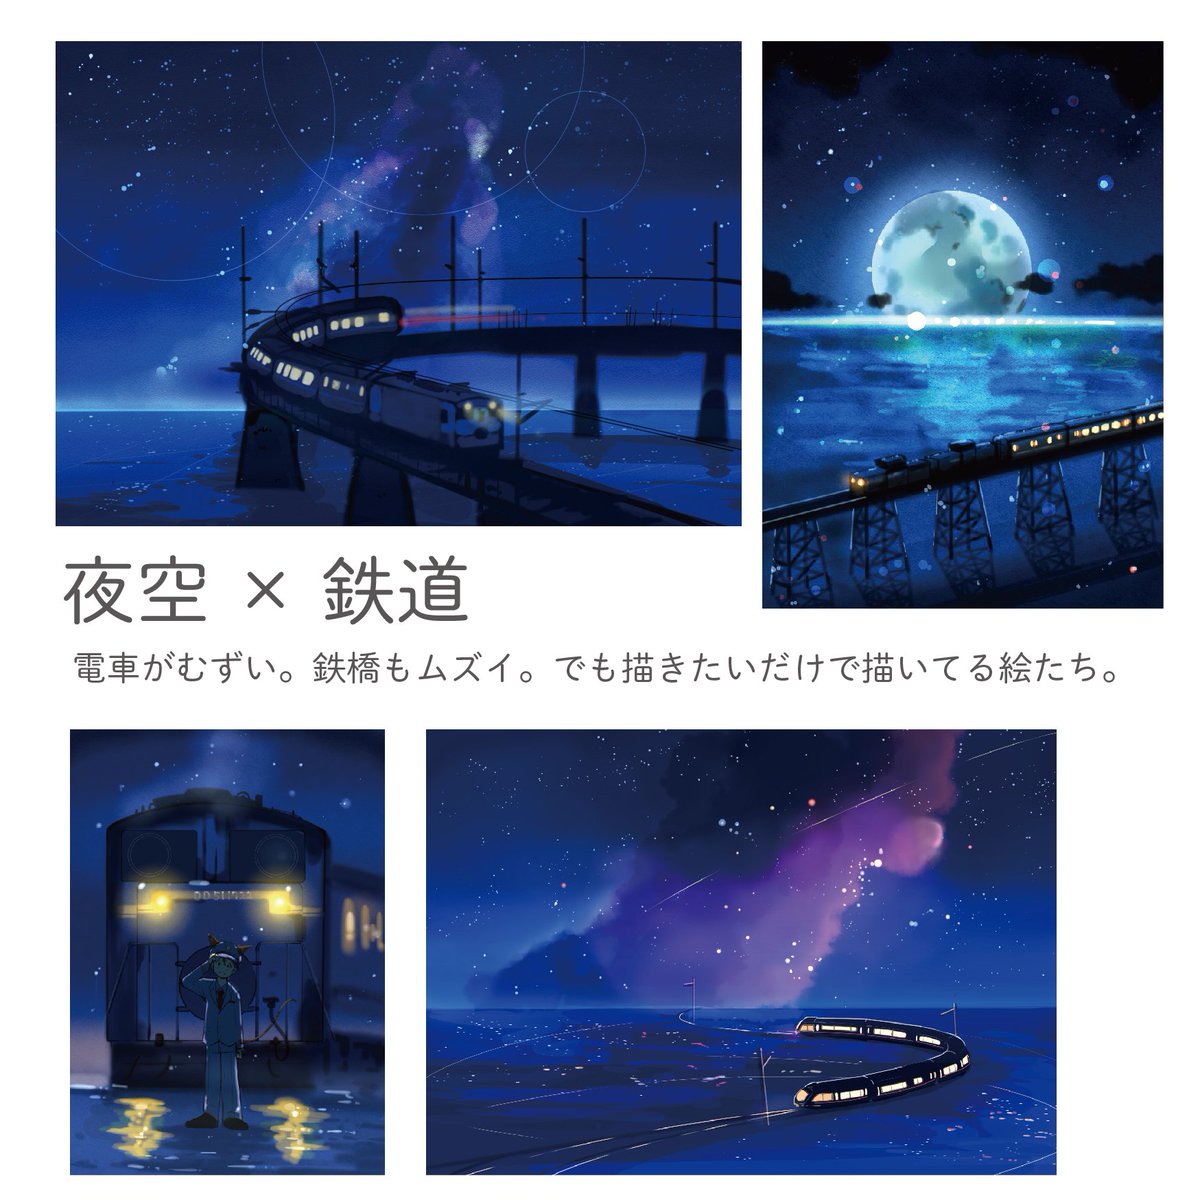 桜田千尋 12月7日星詠み3巻発売 夕日に引き続き自分の夜空のイラストを種類わけしてみました 夜空は 夜空 みたいな感じで一緒に何を描くかが楽しいところかなと思ってます